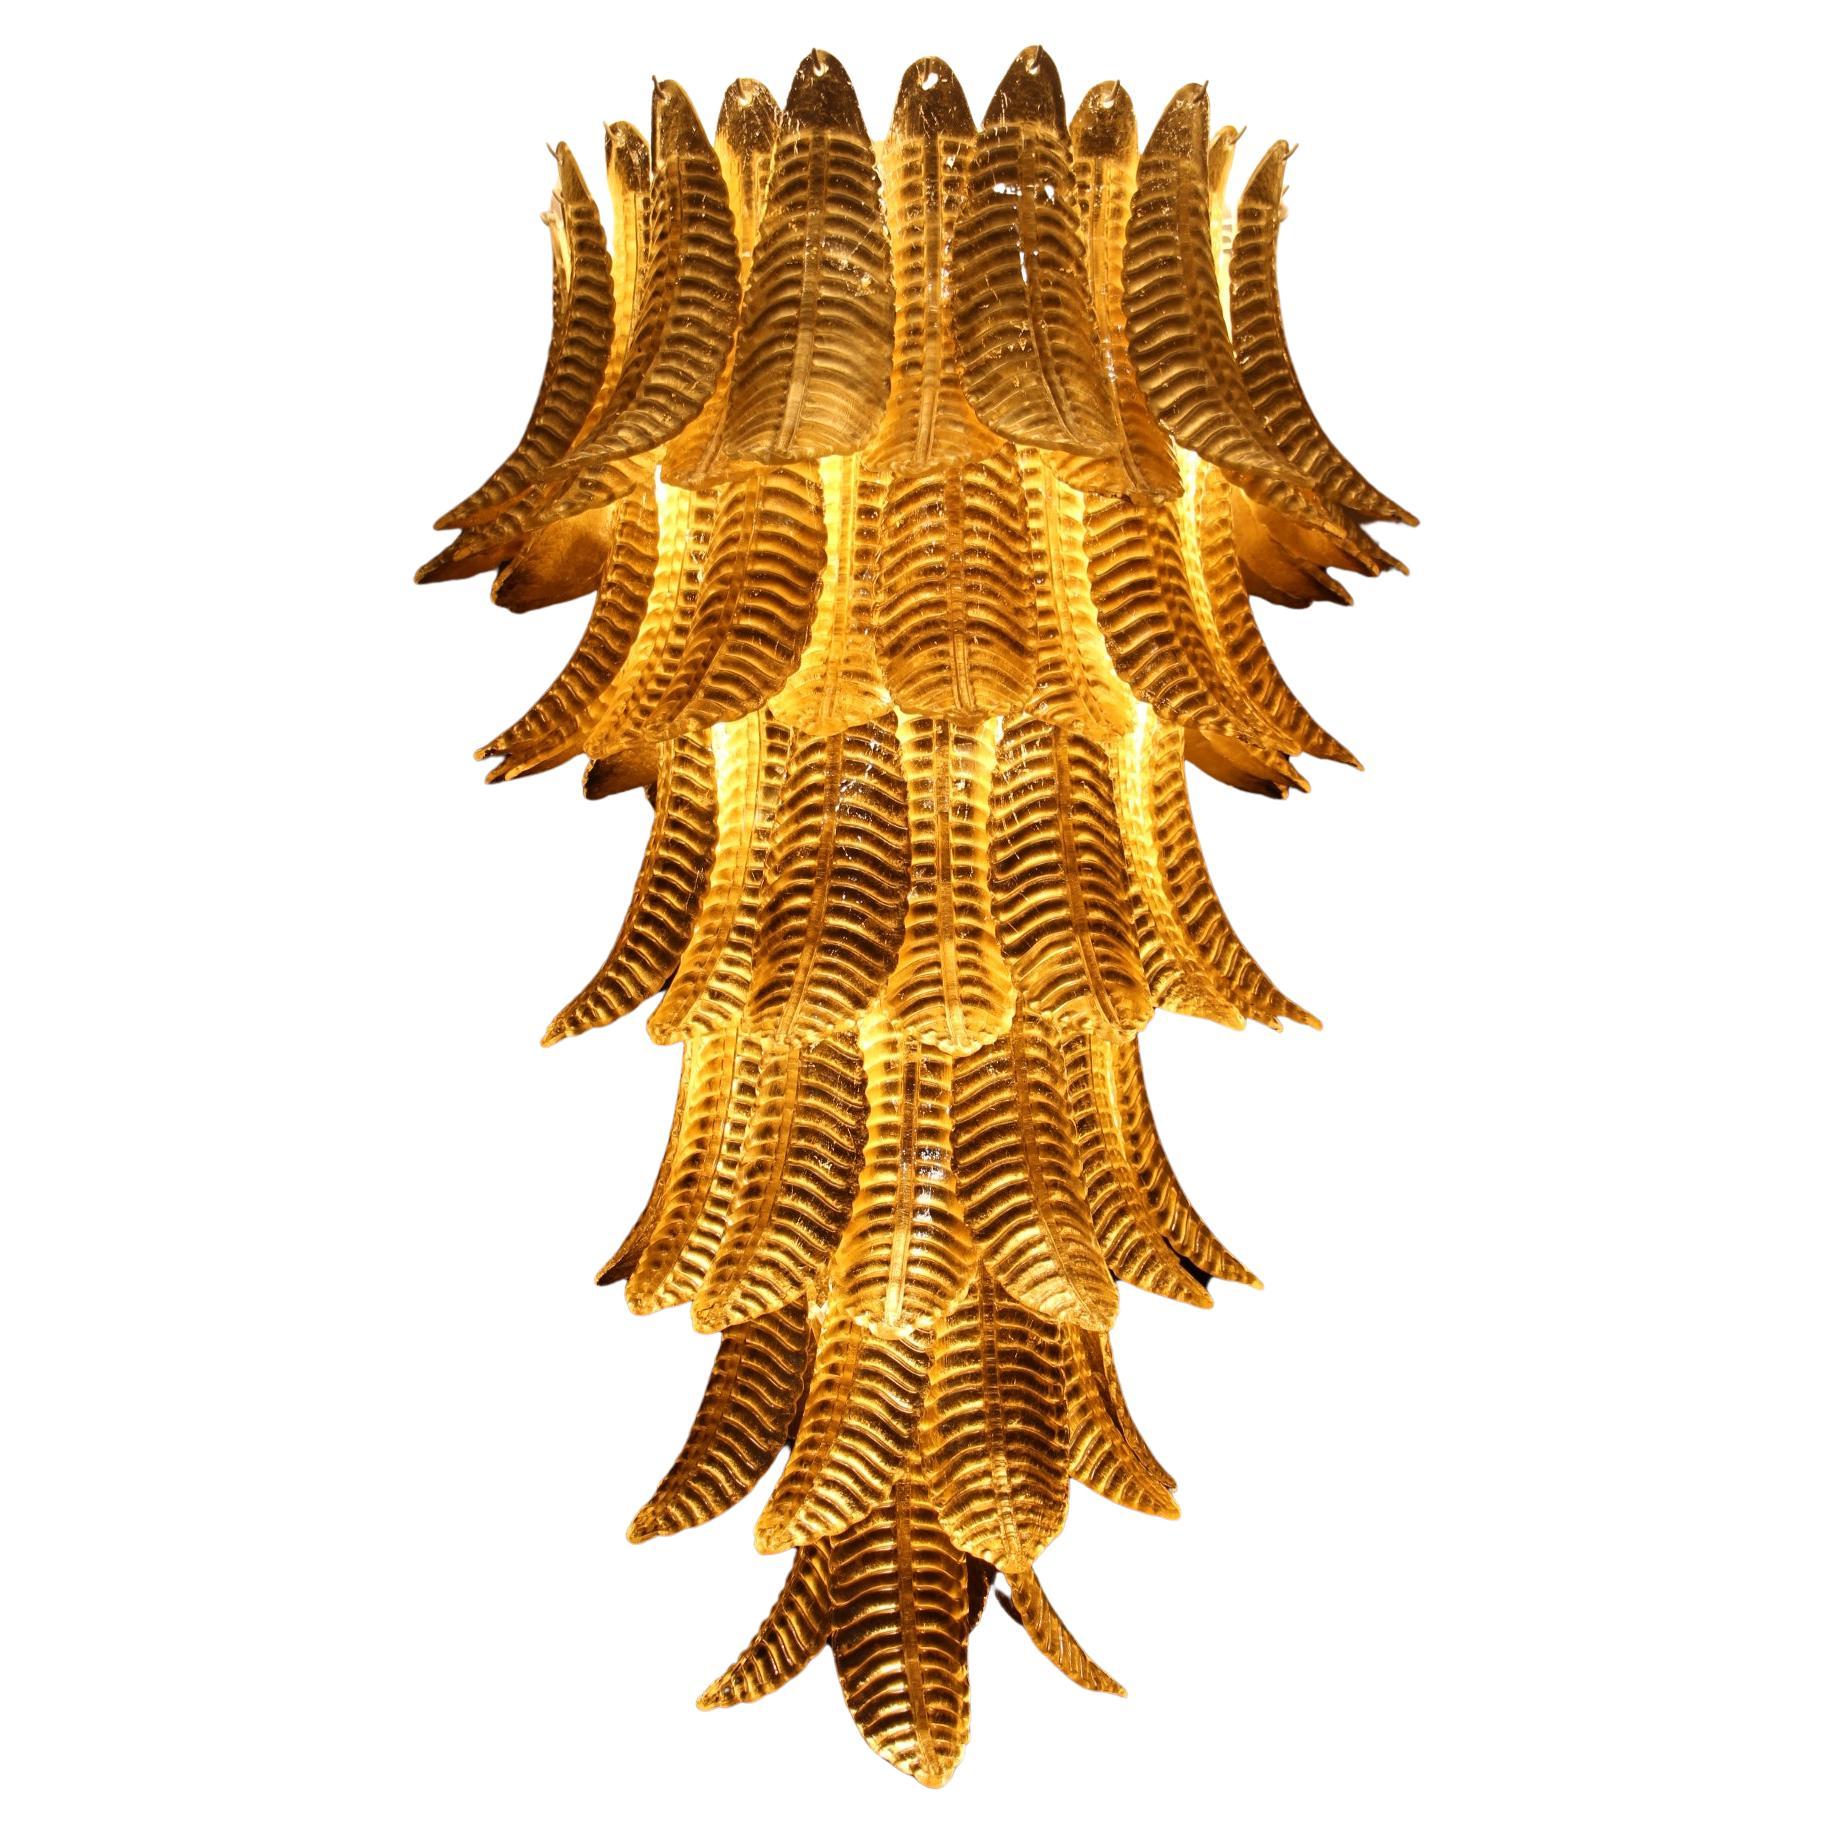 Long Golden Murano Glass Chandelier in Palm Tree Shape